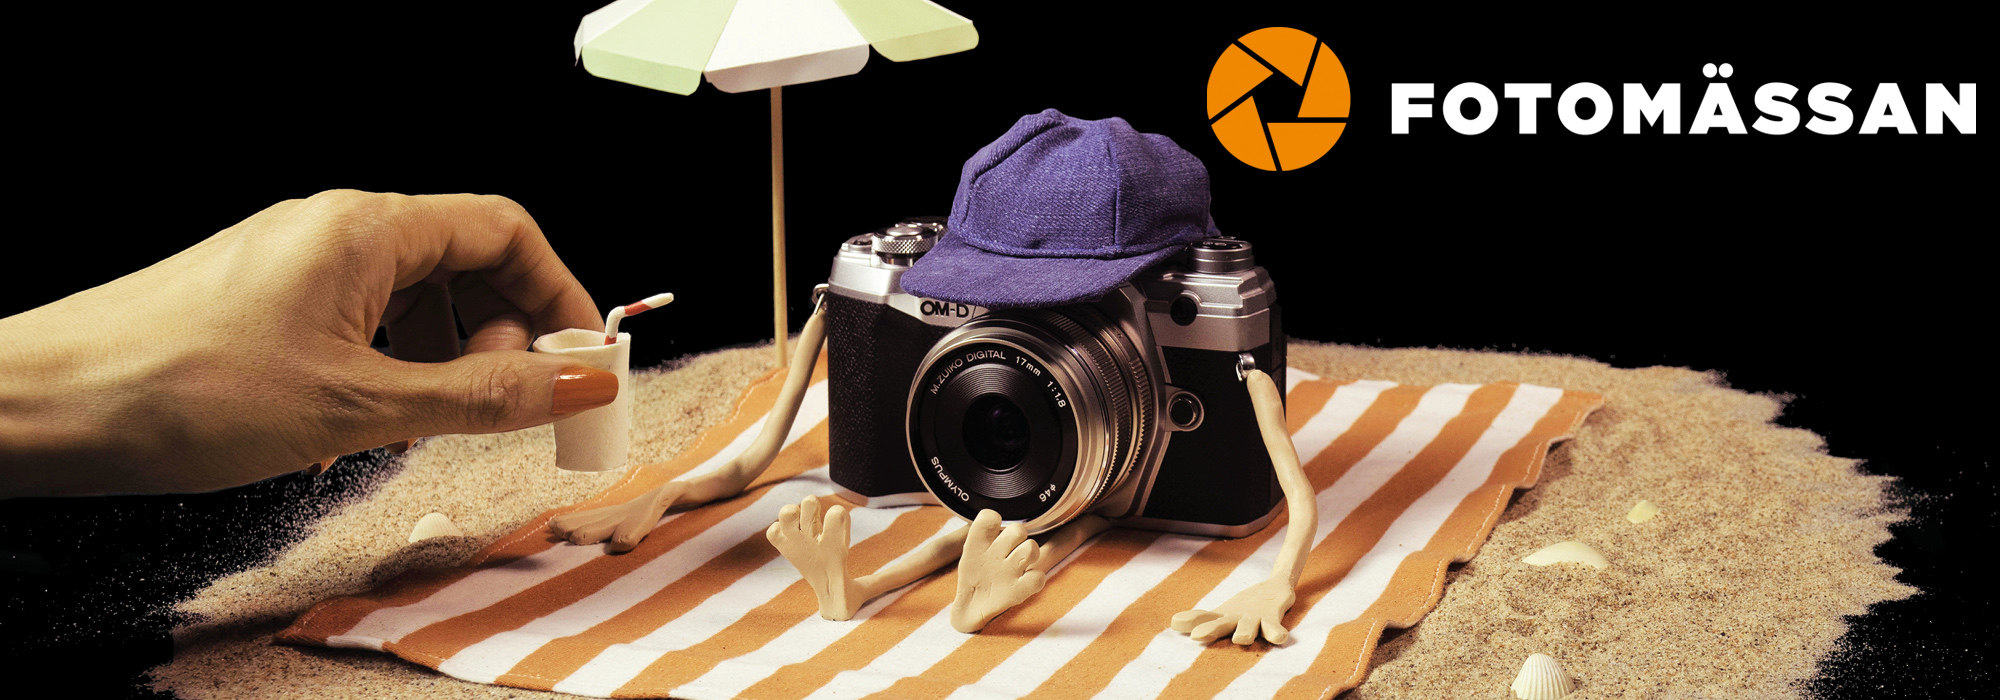 Fotomässan - en svart bakgrund med Fotomässans logotyp i vitt och med en orange illustrerad bländare. I samma bild syns en liten sandstrand och en kamera som är placerad på en filt intill ett parasoll. 